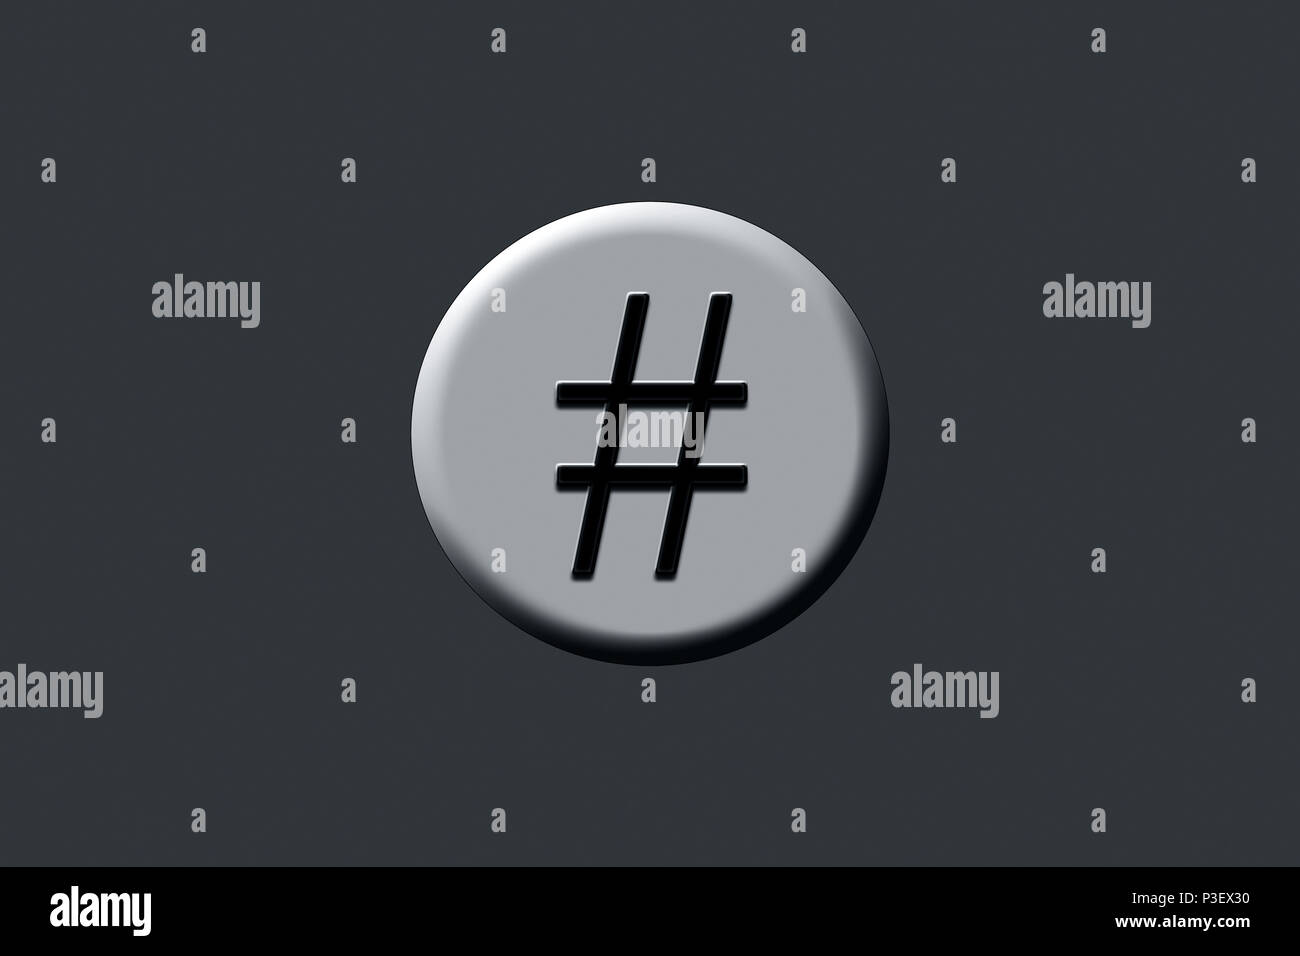 Couleur Noir hashtag symbole avec son ombre sur un cercle ou une ellipse  Photo Stock - Alamy